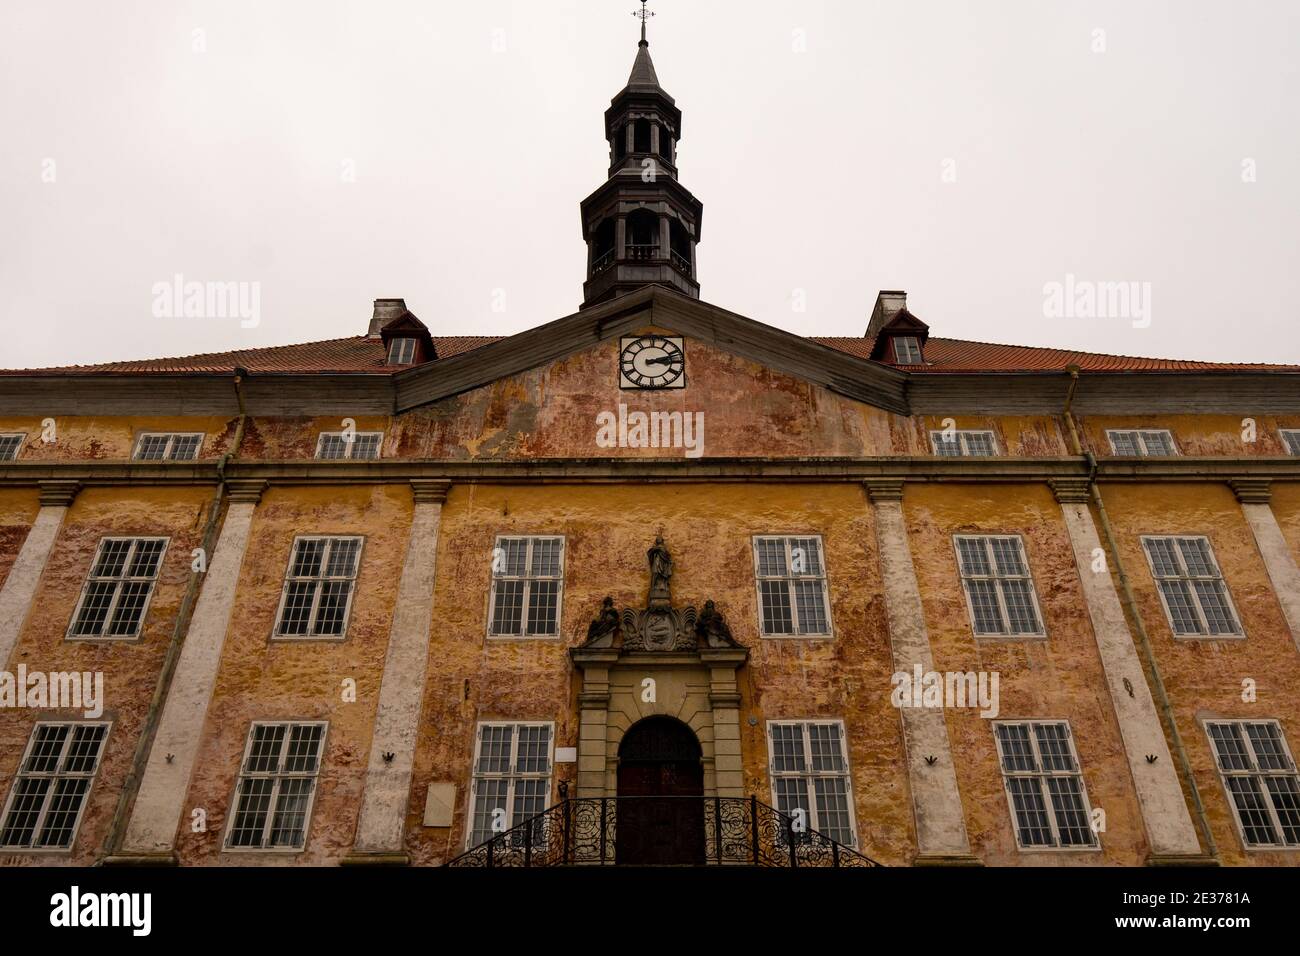 Hôtel de ville de Narva (Narva raekoda) - bâtiment municipal historique, situé sur la place de l'hôtel de ville (Raekoja plats) à côté du Narva College. Banque D'Images